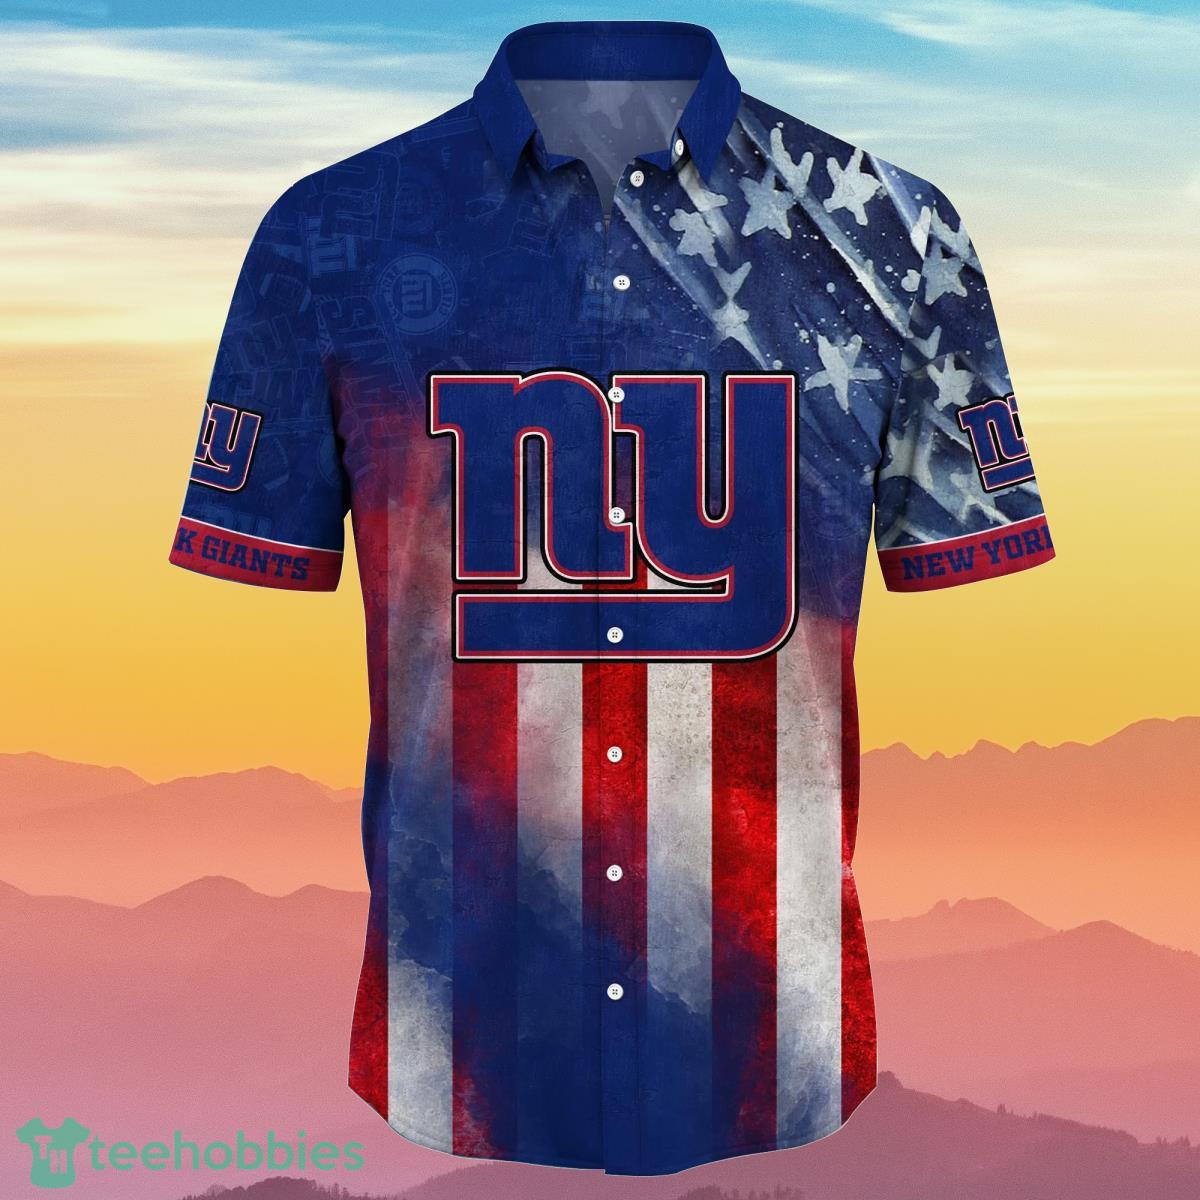 New York Giants NFL Flower Hawaiian Shirt For Men Women Style Gift